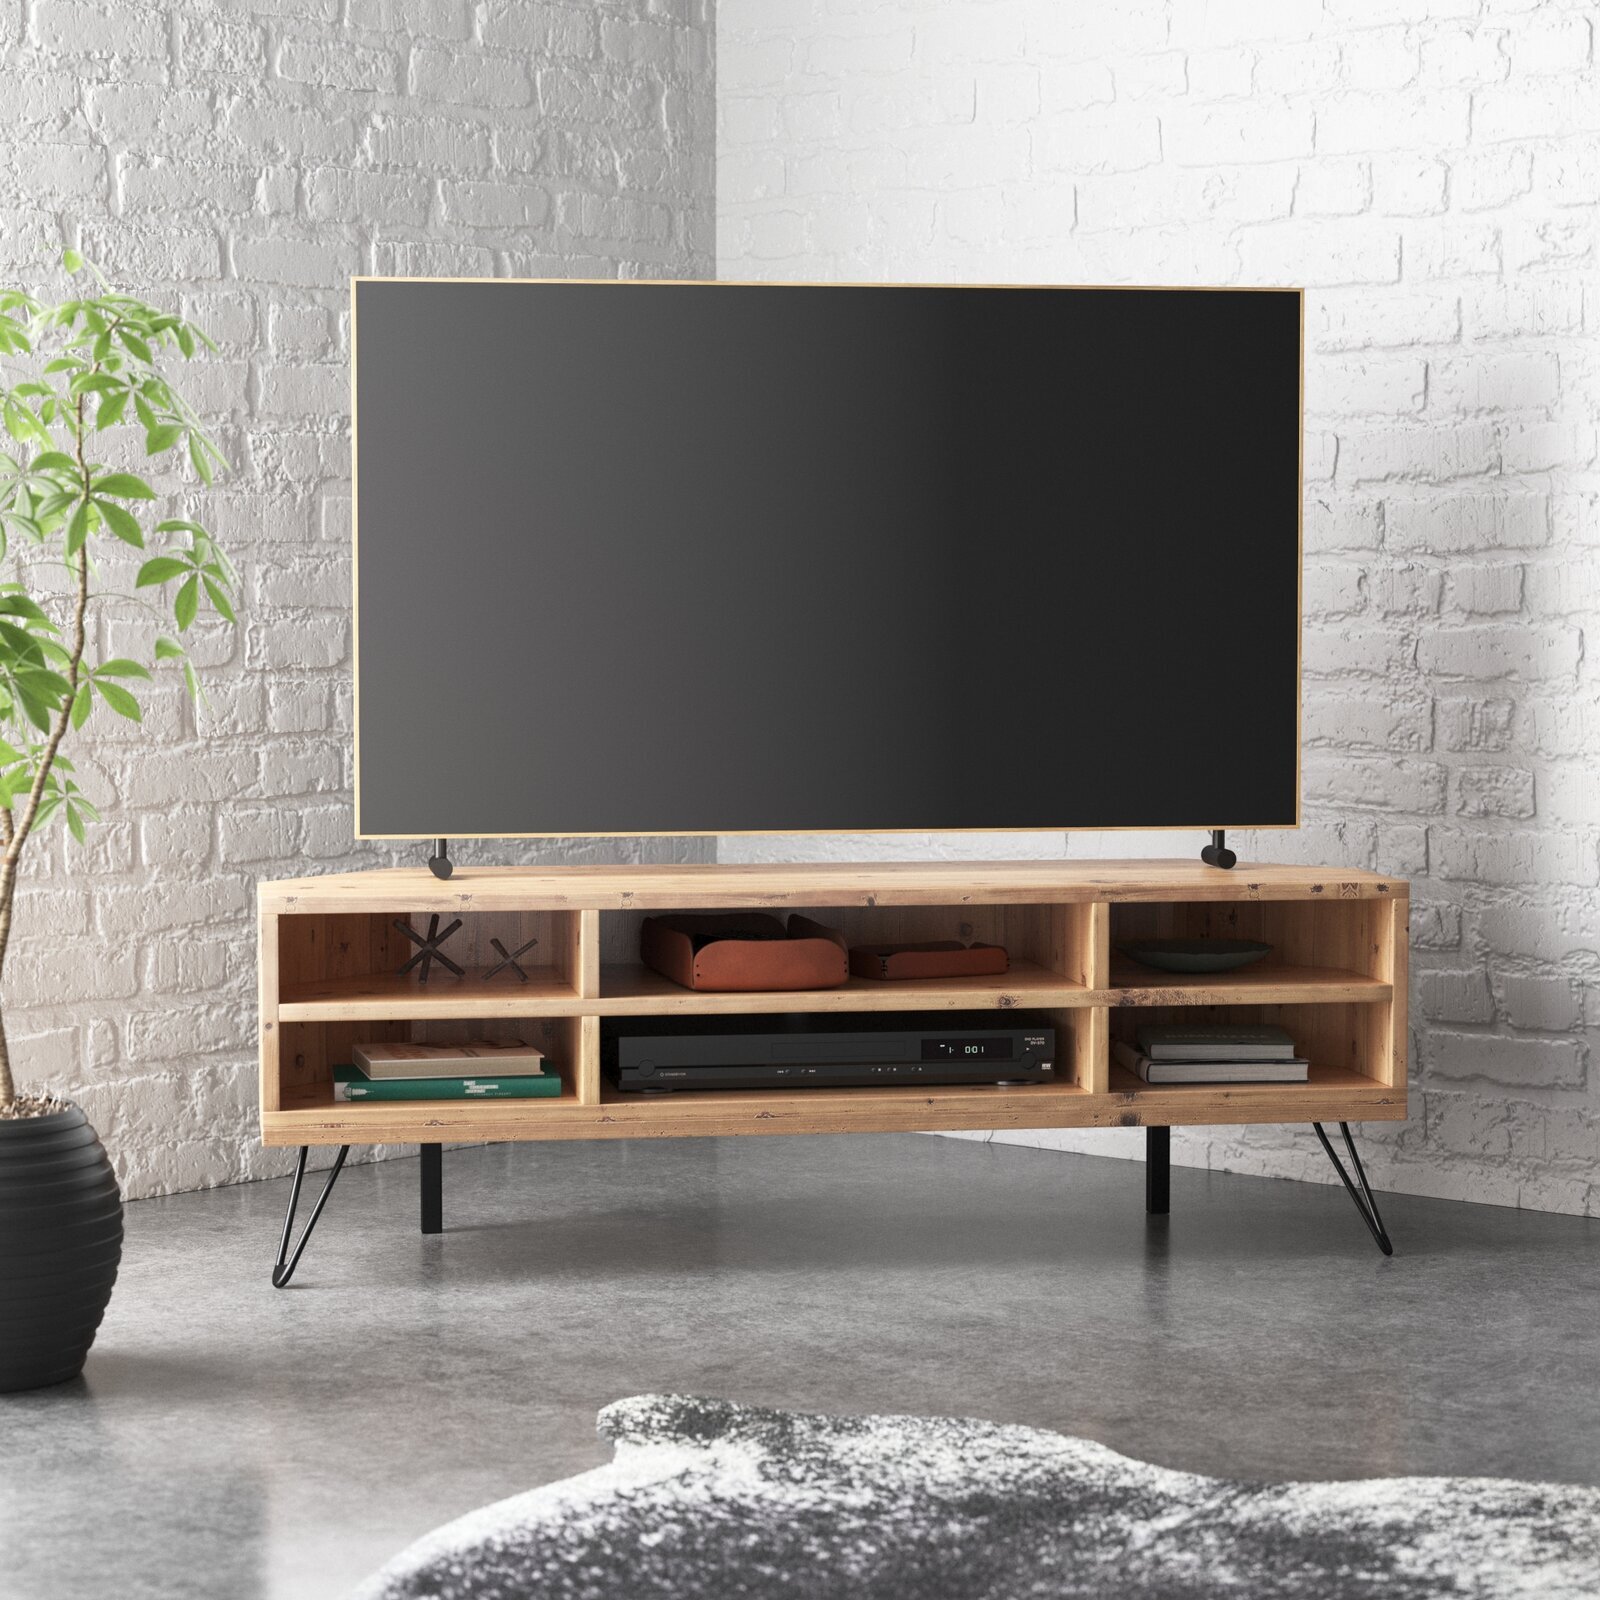 Industrial corner tv unit design for living room